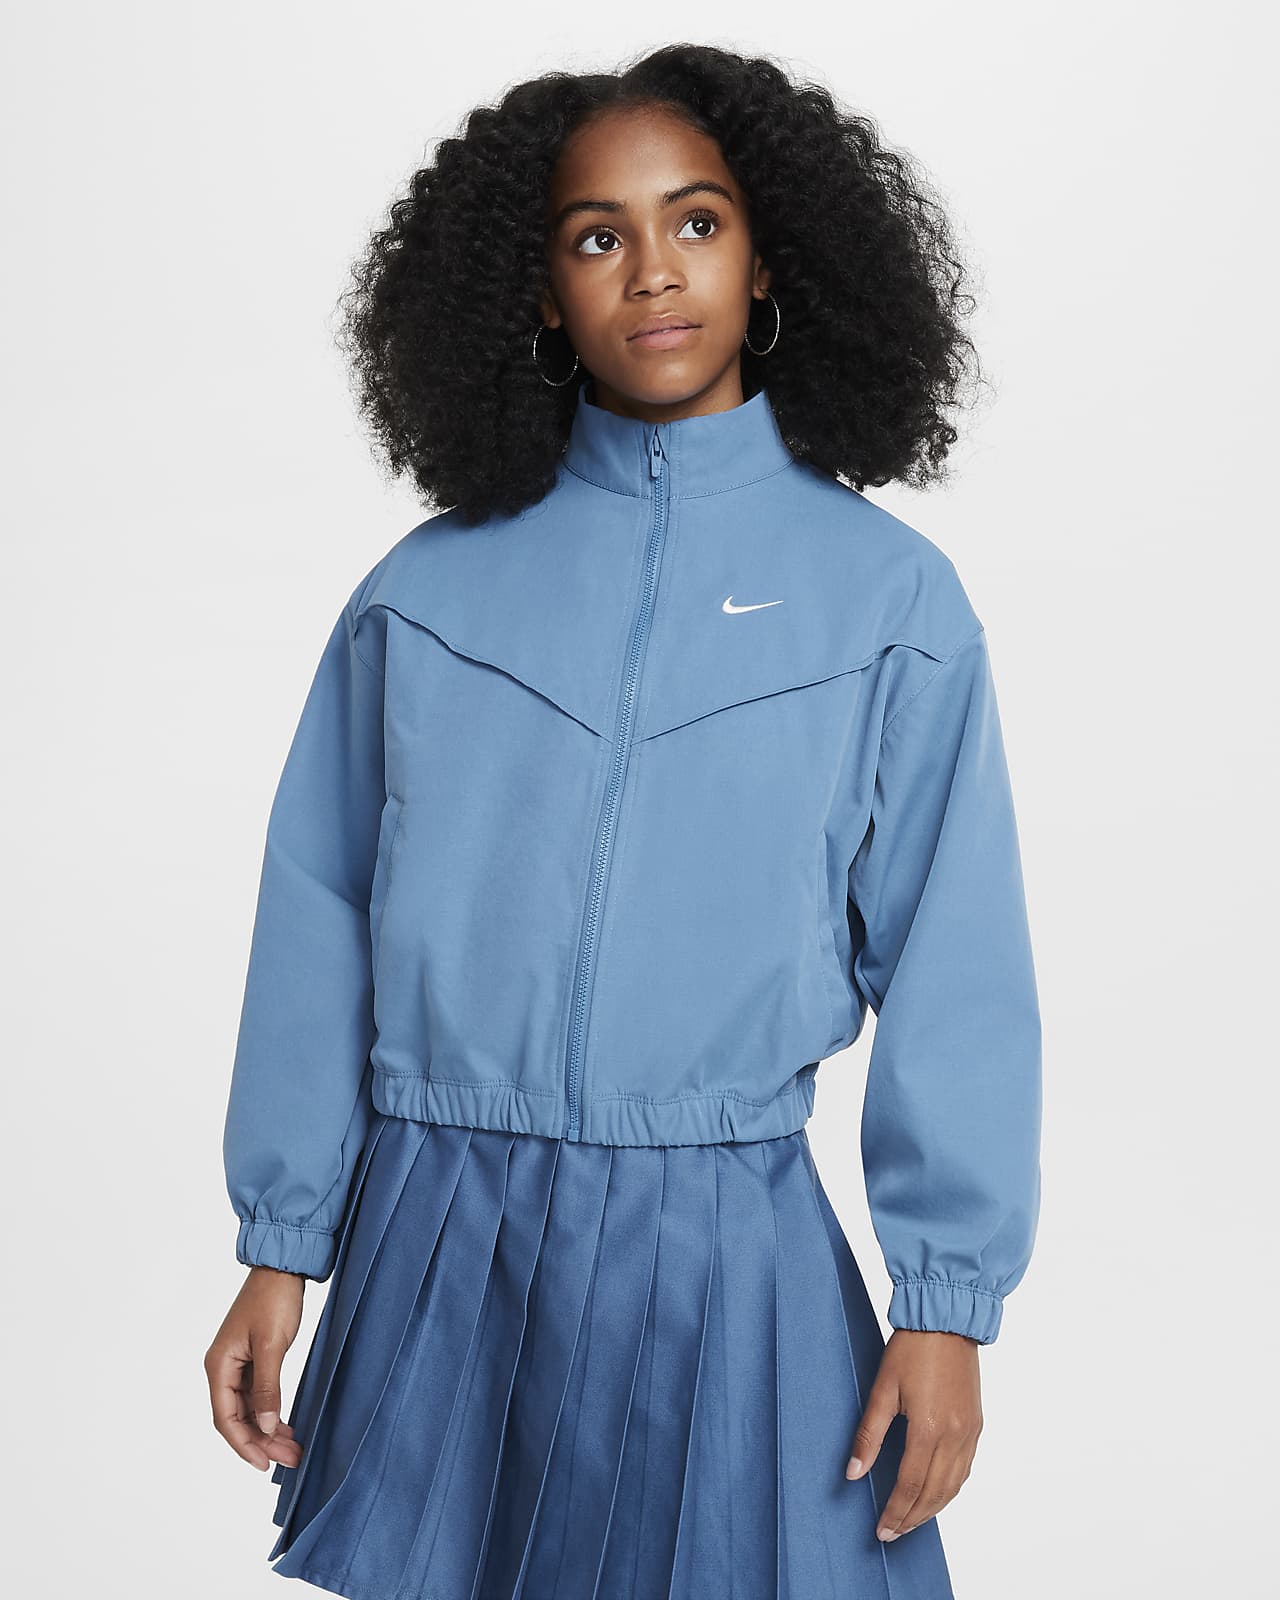 【ナイキ公式】スポーツウェア ガールズ オーバーサイズド ライトウェイト ジャケット ブルー ウィメンズ L Nike Sportswear Girls' Oversized Lightweight Jacket